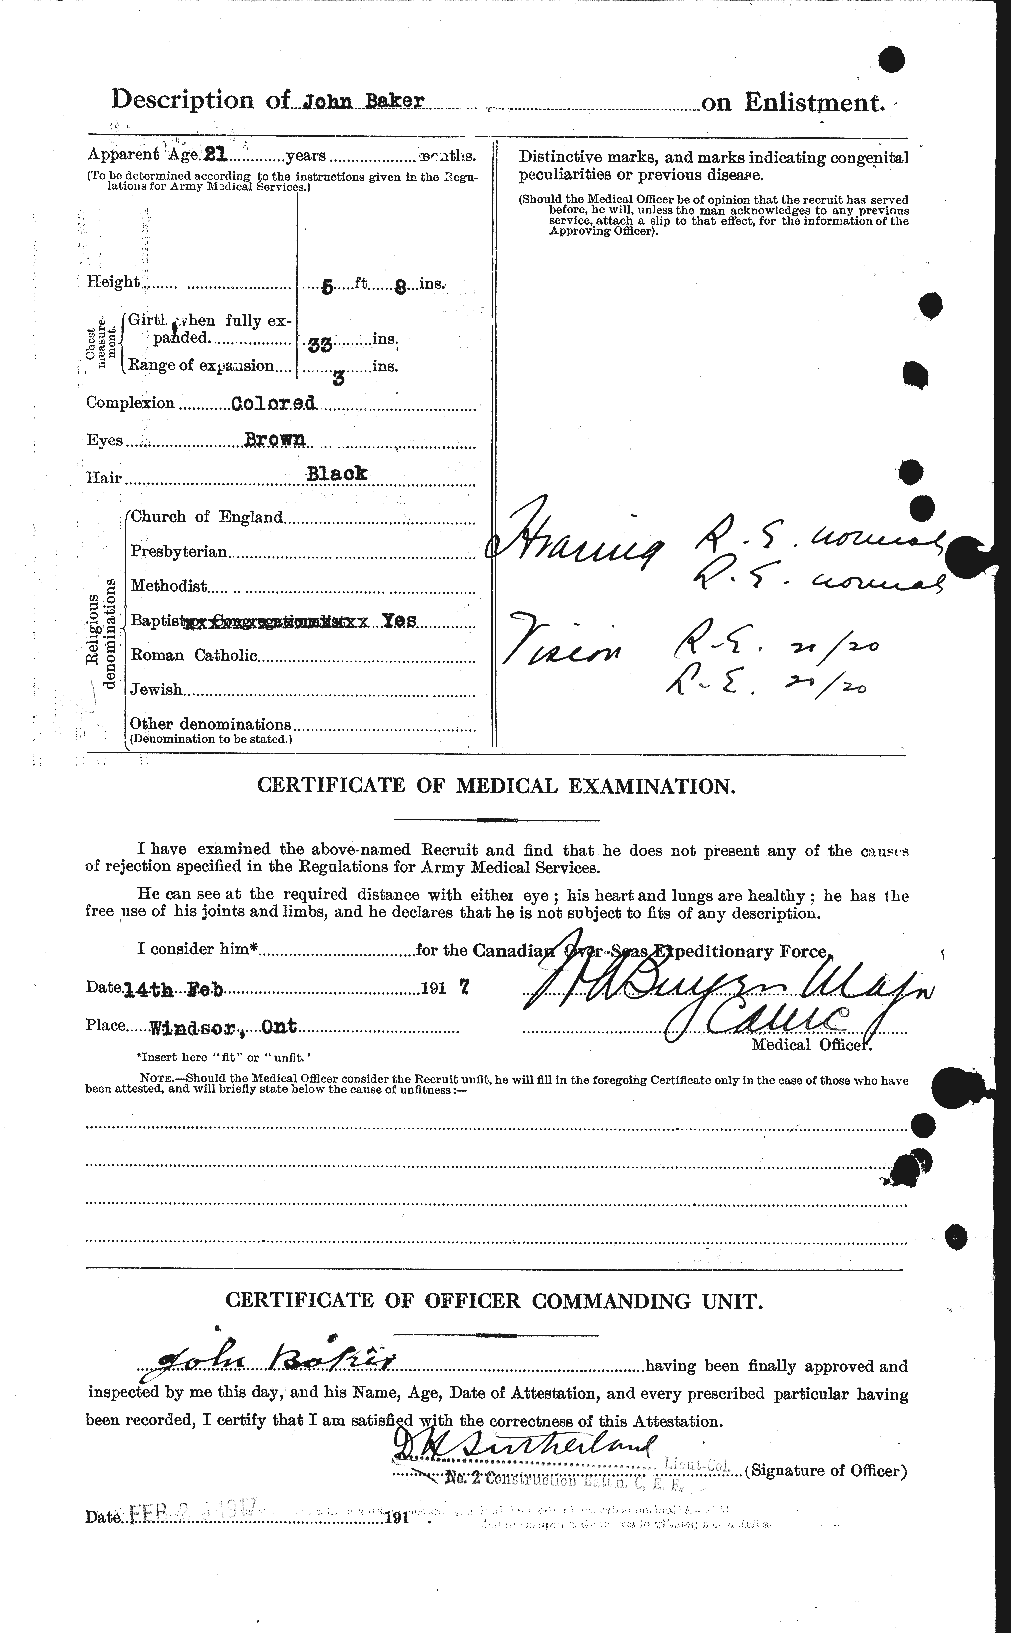 Dossiers du Personnel de la Première Guerre mondiale - CEC 221890b